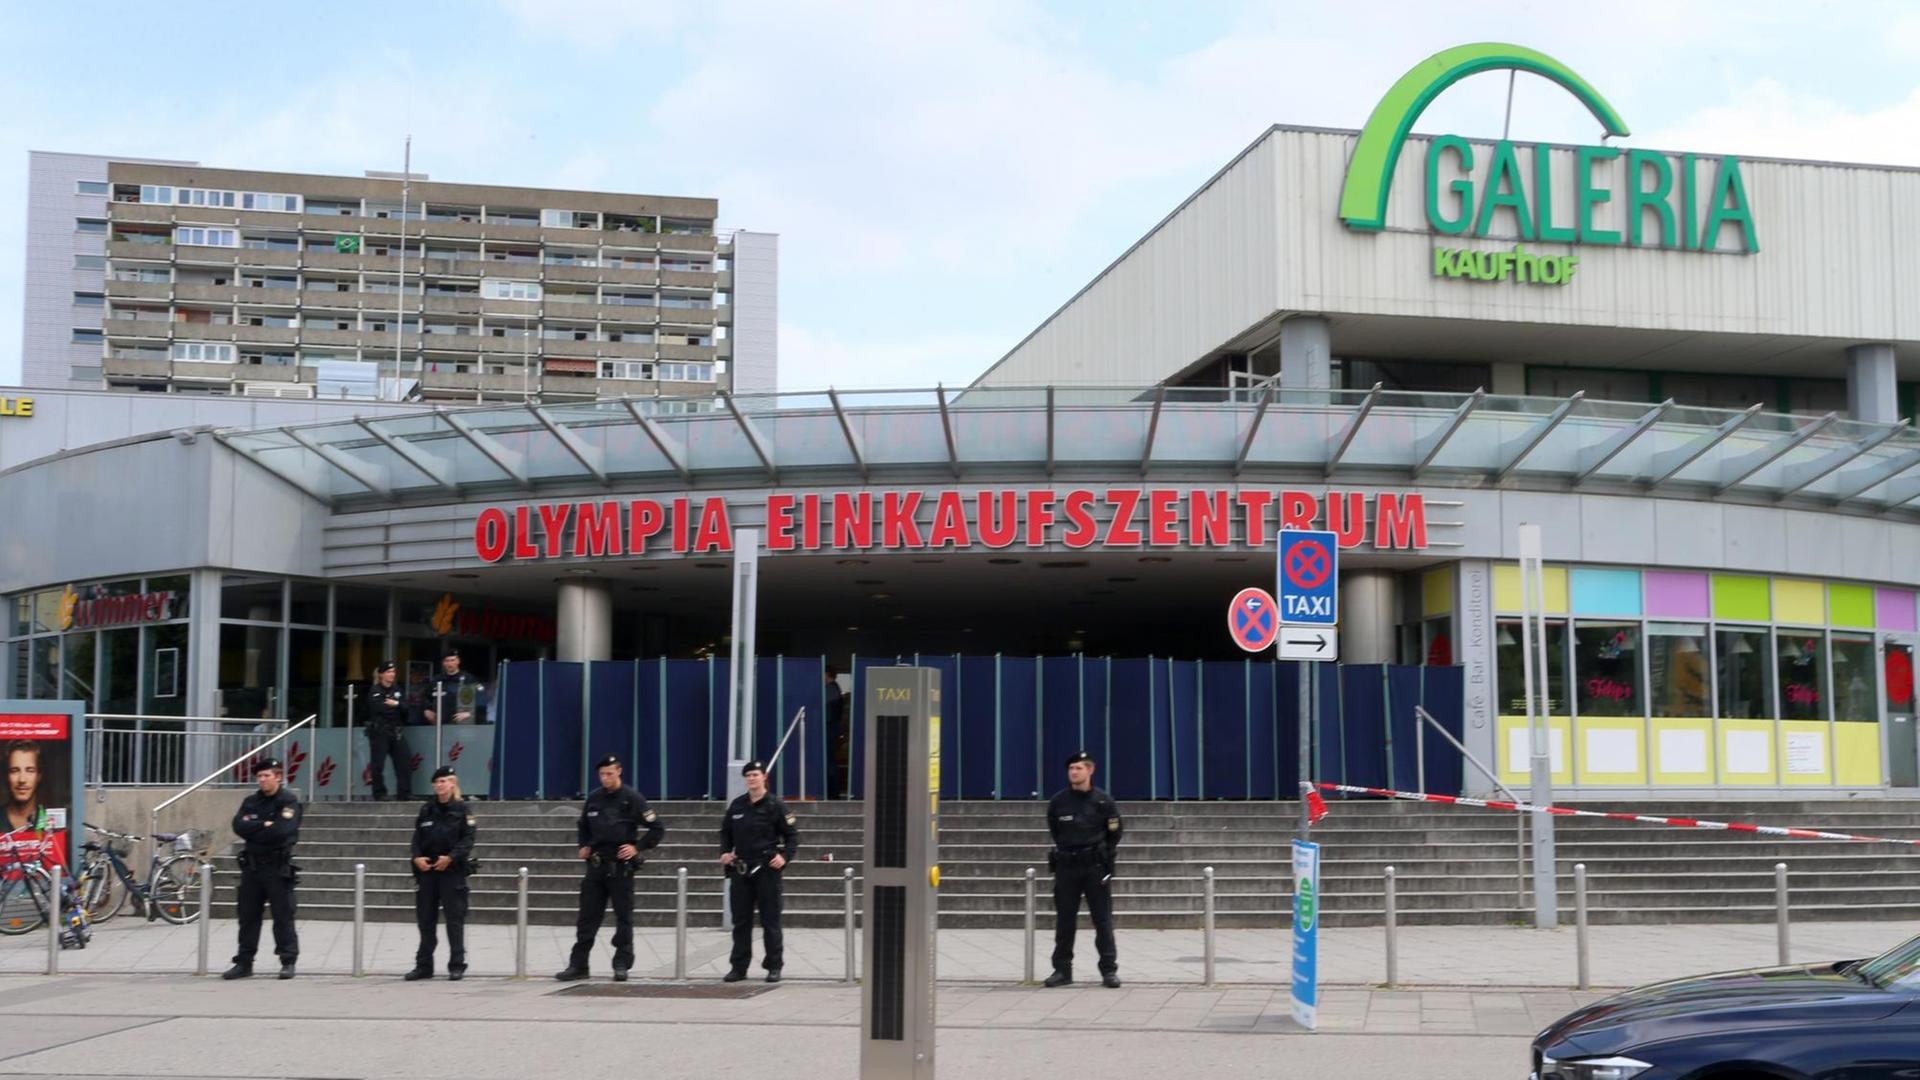 Polizeibeamte stehen am 23.07.2016 vor dem Olympia-Einkaufszentrum OEZ in München (Bayern), einen Tag nach einer Schießerei mit Toten und Verletzten.